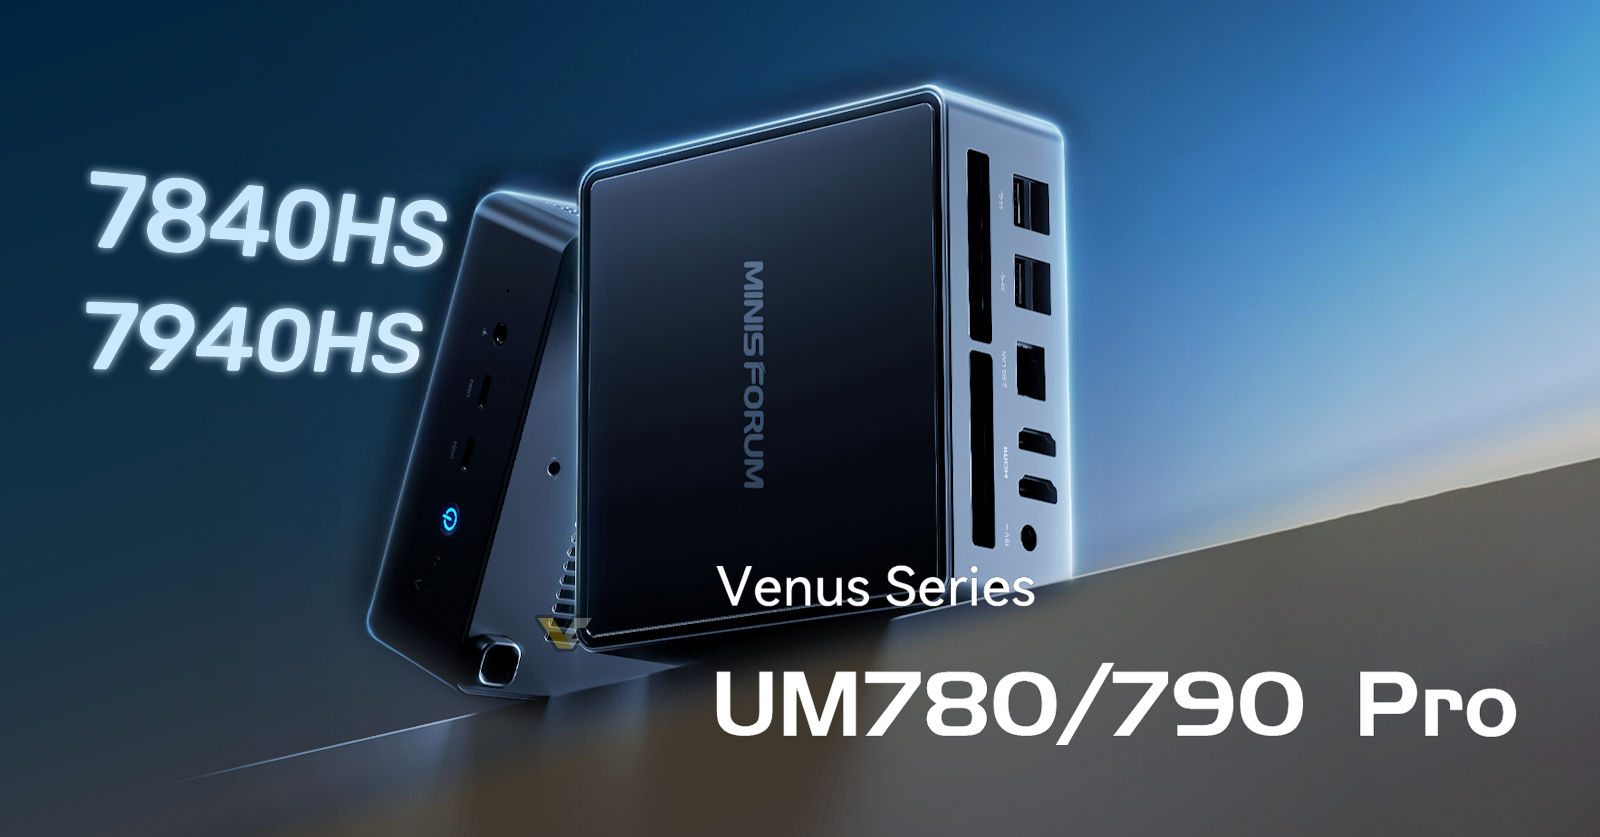 MINISFORUM Venus UM790 Pro Mini PC with Ryzen 9 7940HS